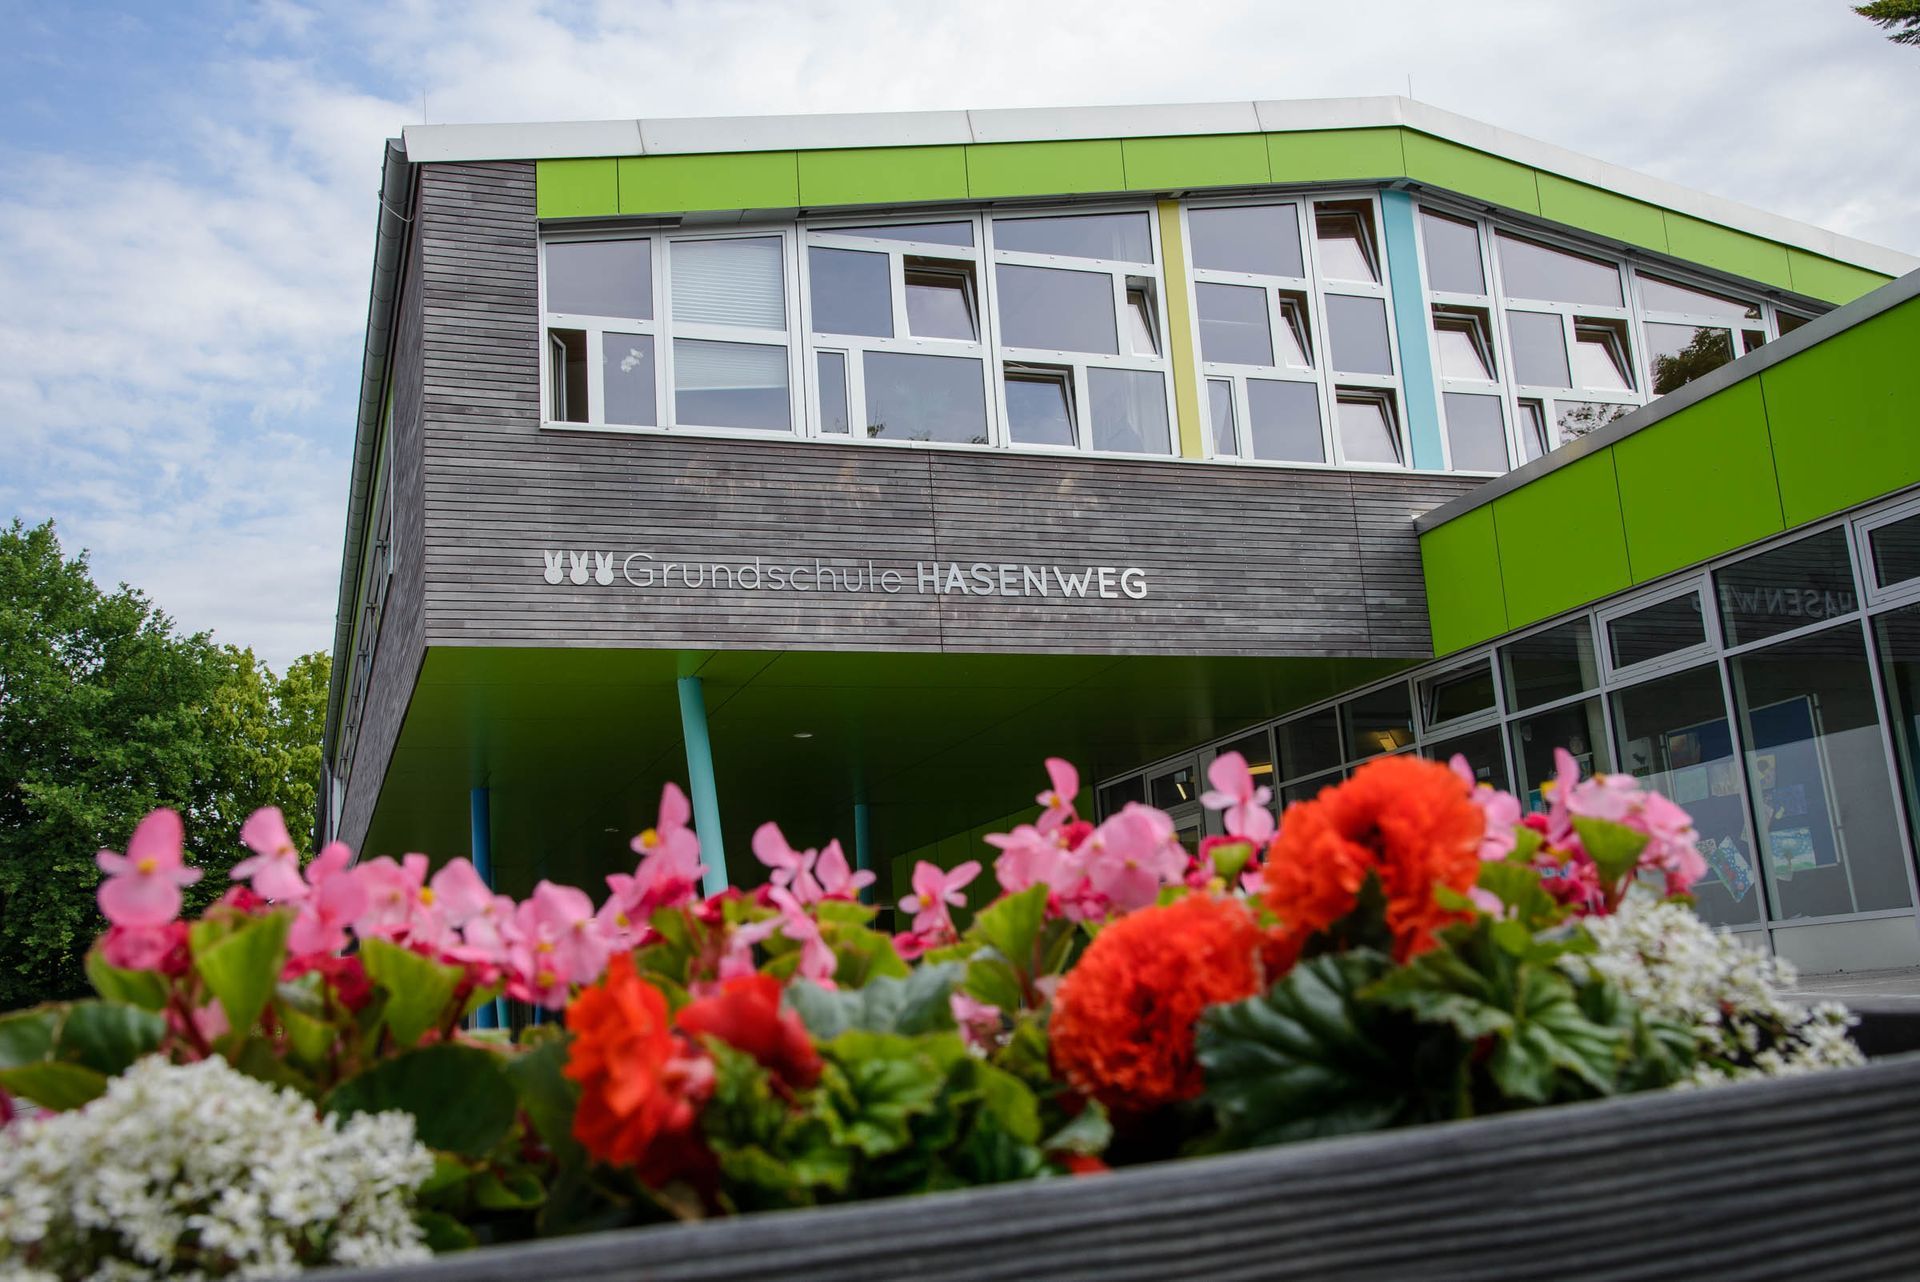 Schulfotografie der Grundschule Hasenweg – Fotograf Kay Winter, WINTERPOL, Hamburg